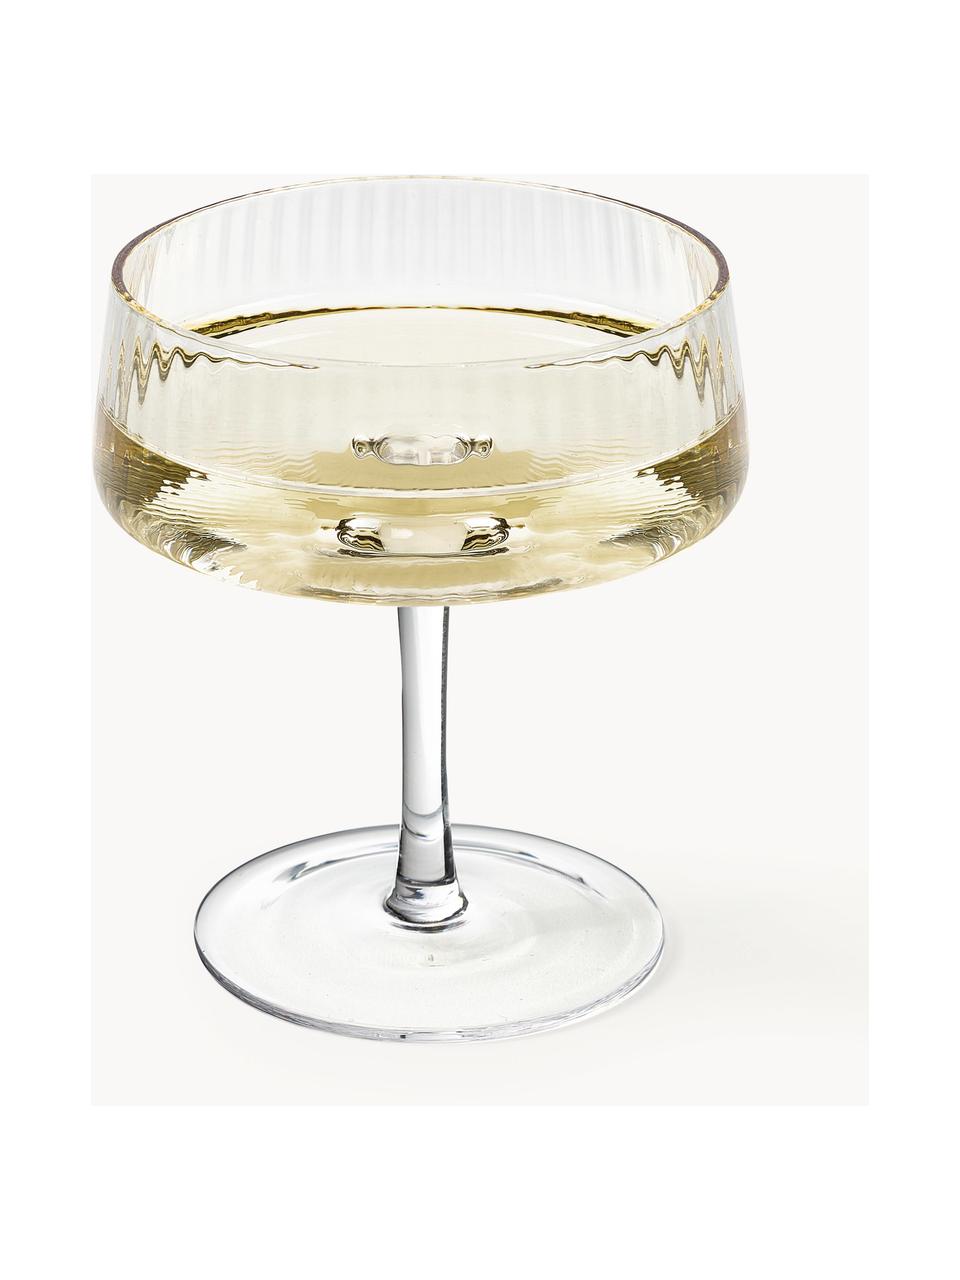 Handgefertigte Champagnerschalen Cami mit Rillenstruktur, 4 Stück, Transparent, Ø 11 x H 13 cm, 200 ml